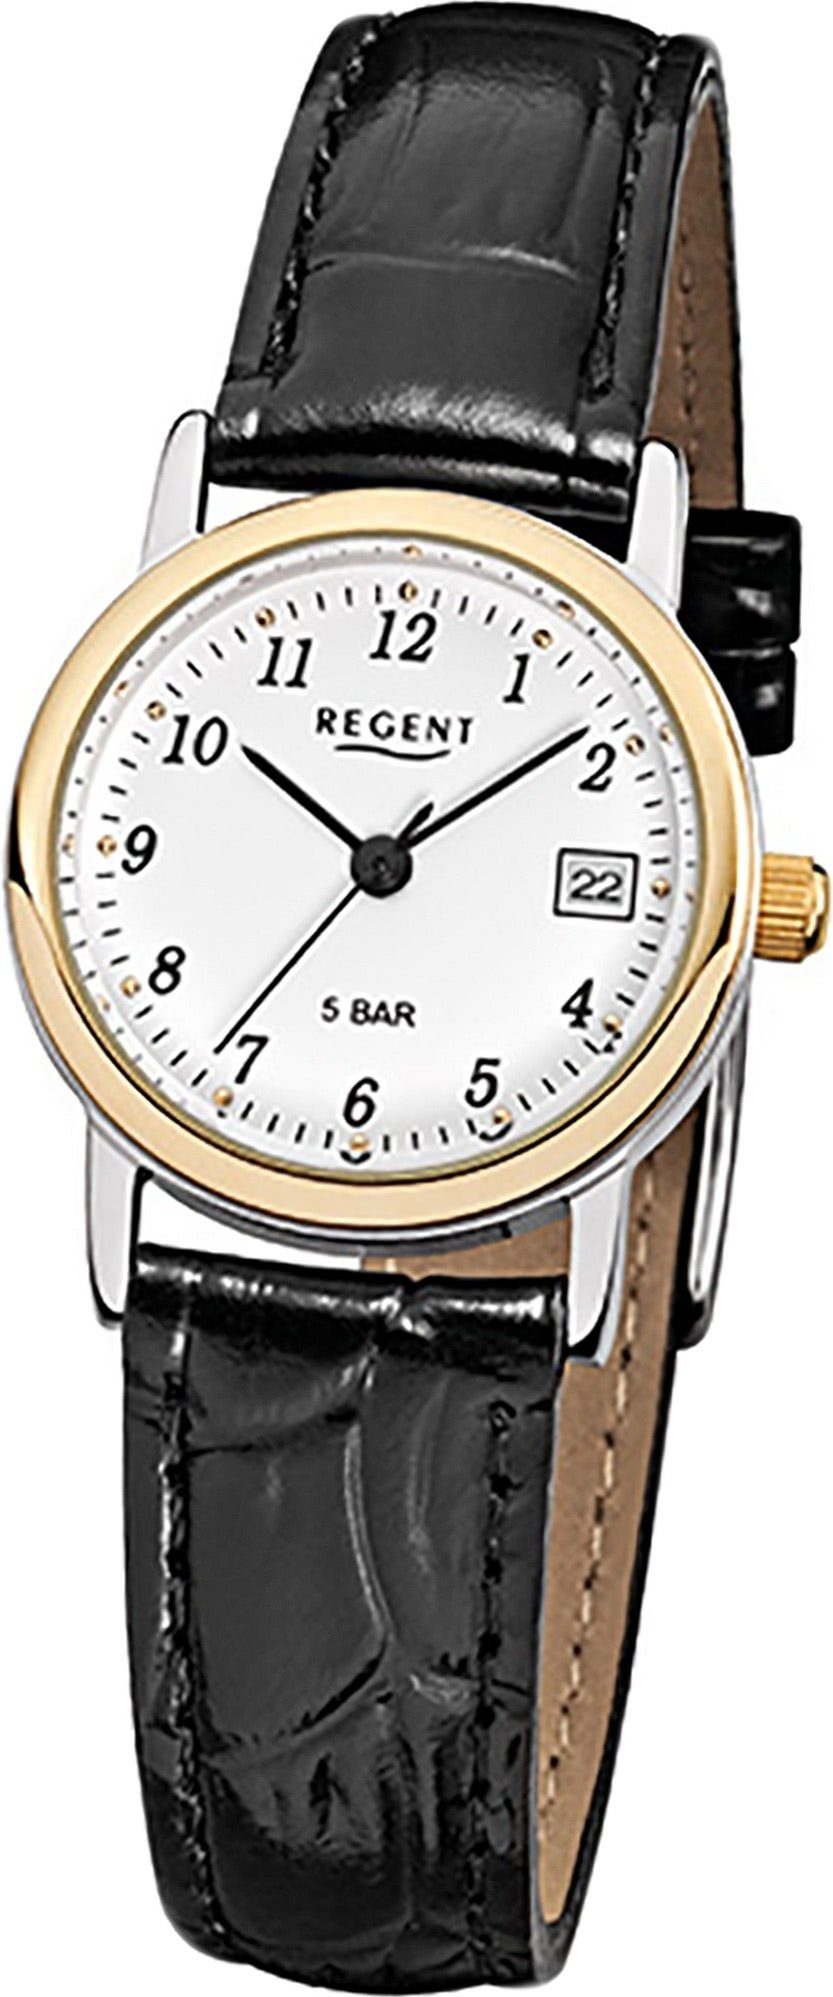 Regent Quarzuhr Regent Leder Damen Uhr F-828 Quarzuhr, Damenuhr Lederarmband schwarz, rundes Gehäuse, klein (ca. 25mm)